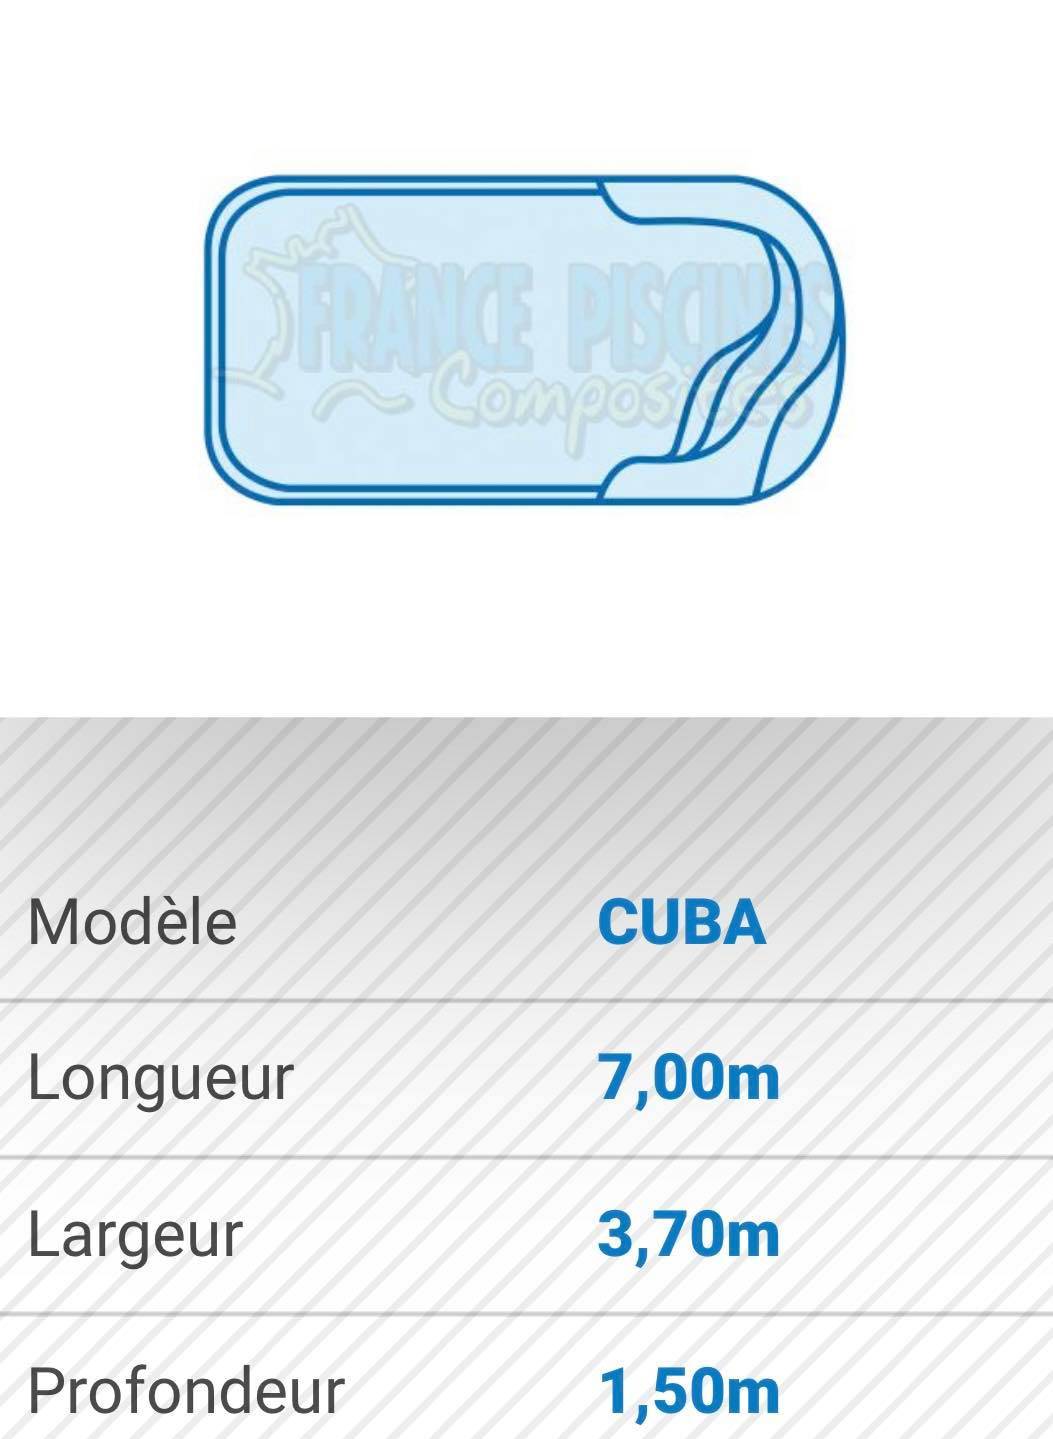 Coque arrondie pas cher, CUBA - France Piscines Composites - FERRE PISCINES à CASSIS